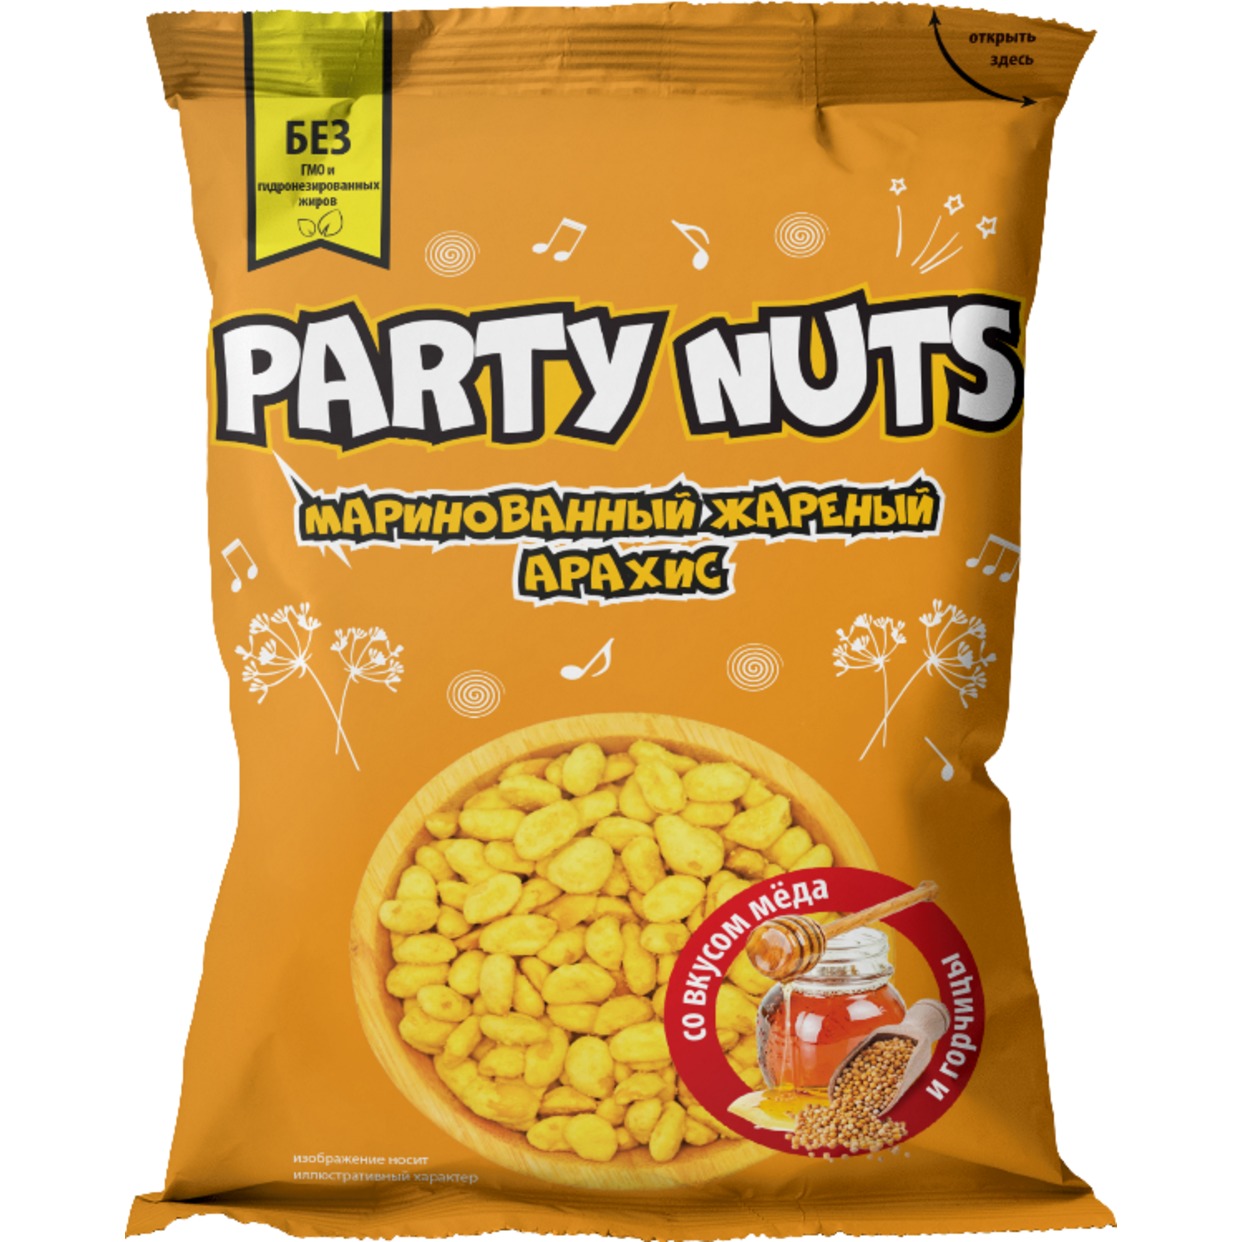 Акция в Пятерочке на Маринованный жареный арахис со вкусом меда и горчицы "PARTY NUTS" 70 гр